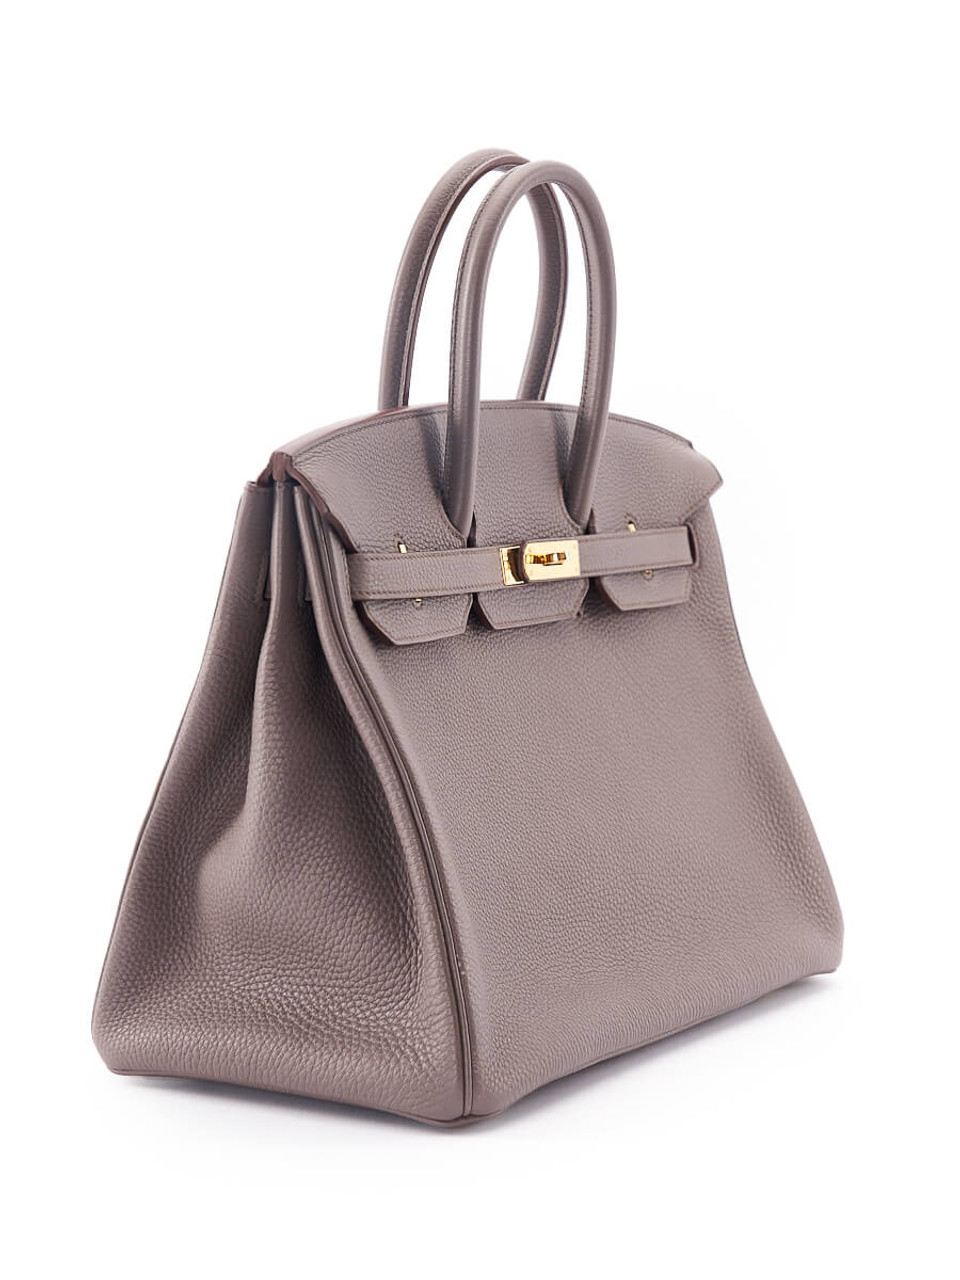 Hermes Handbag Birkin 35 Togo Leather Etain Color Gold Hardware 2016 –  Swankysaks